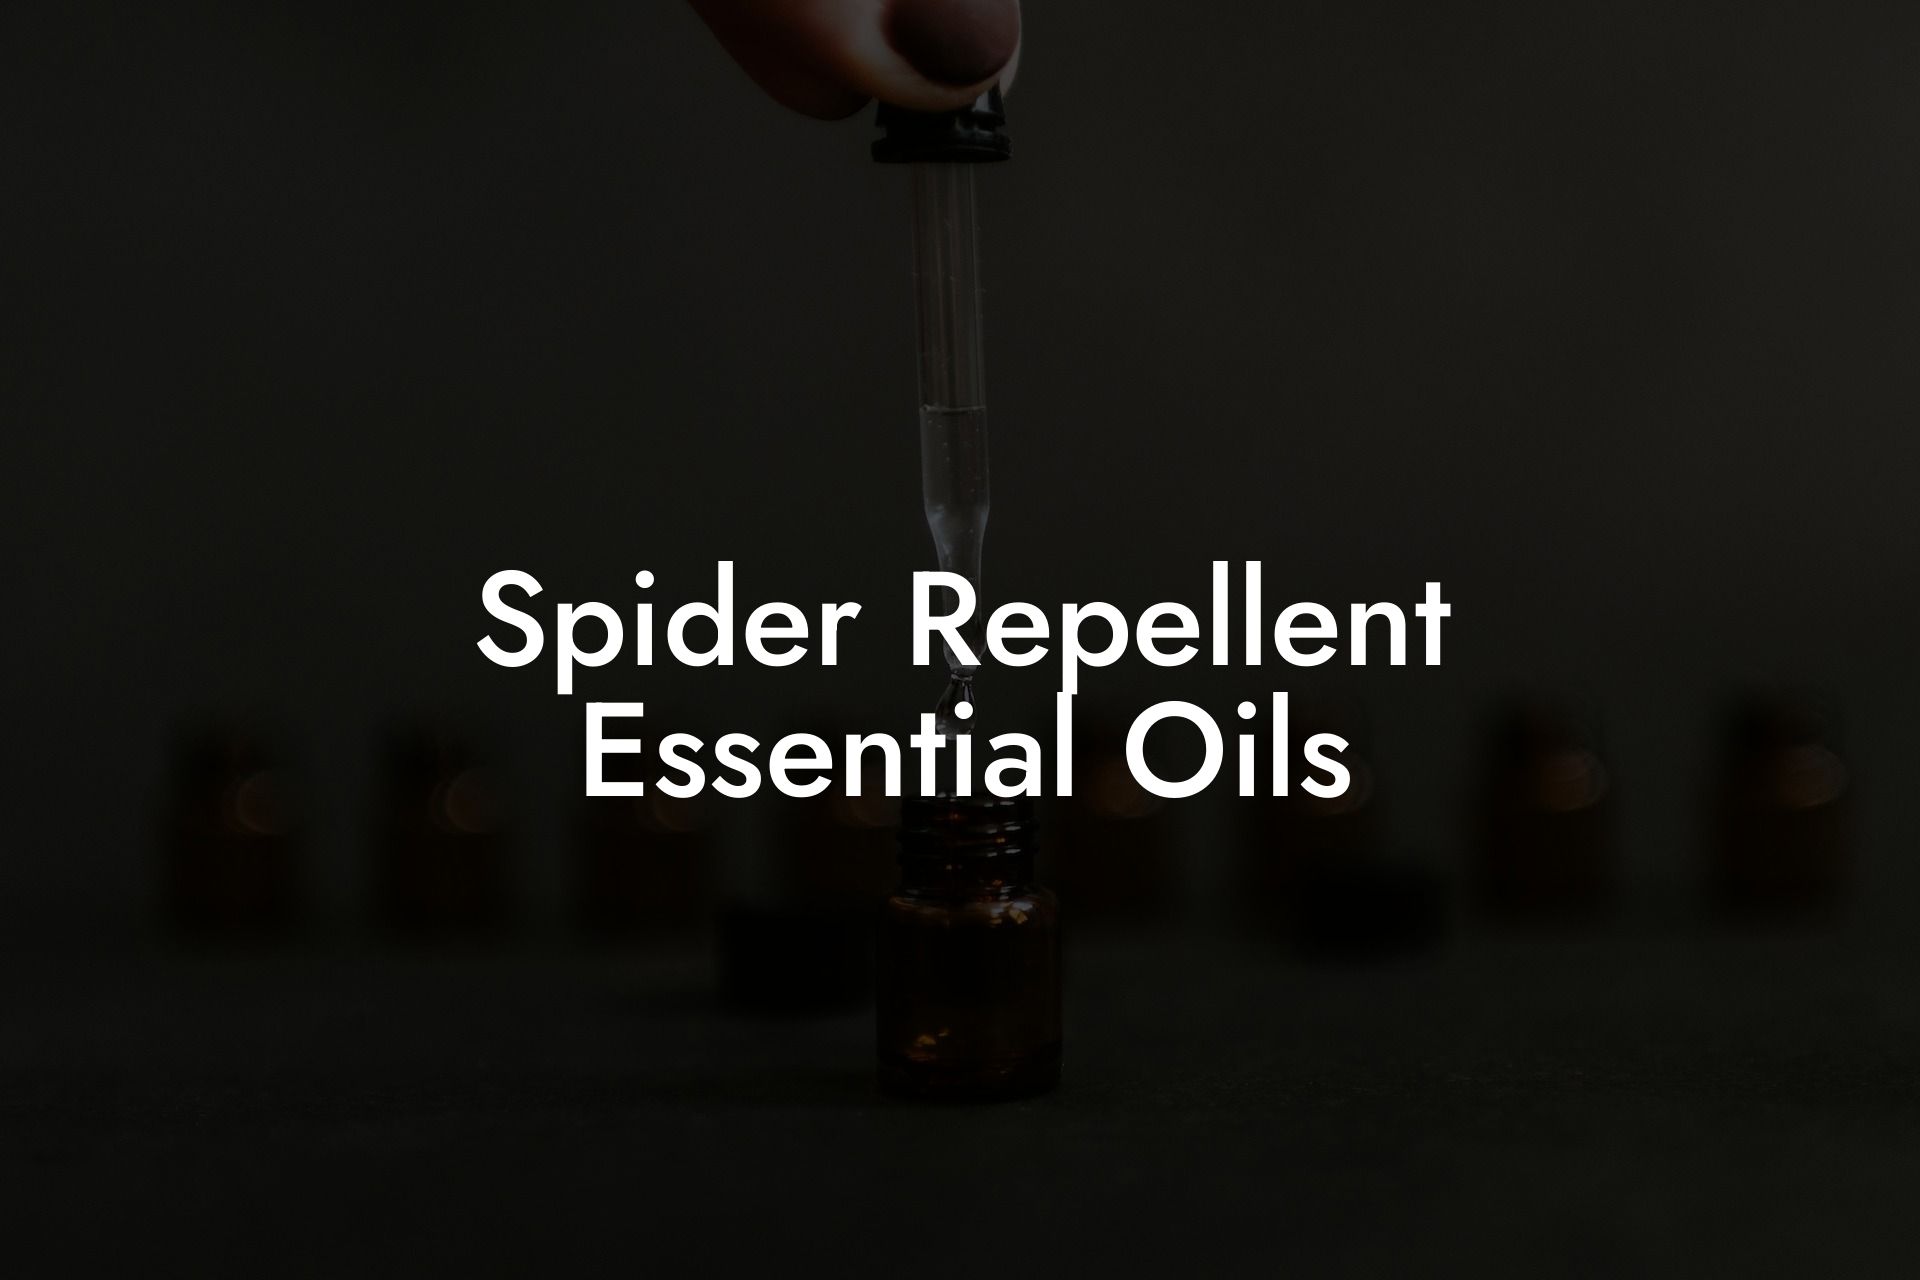 Spider Repellent Essential Oils